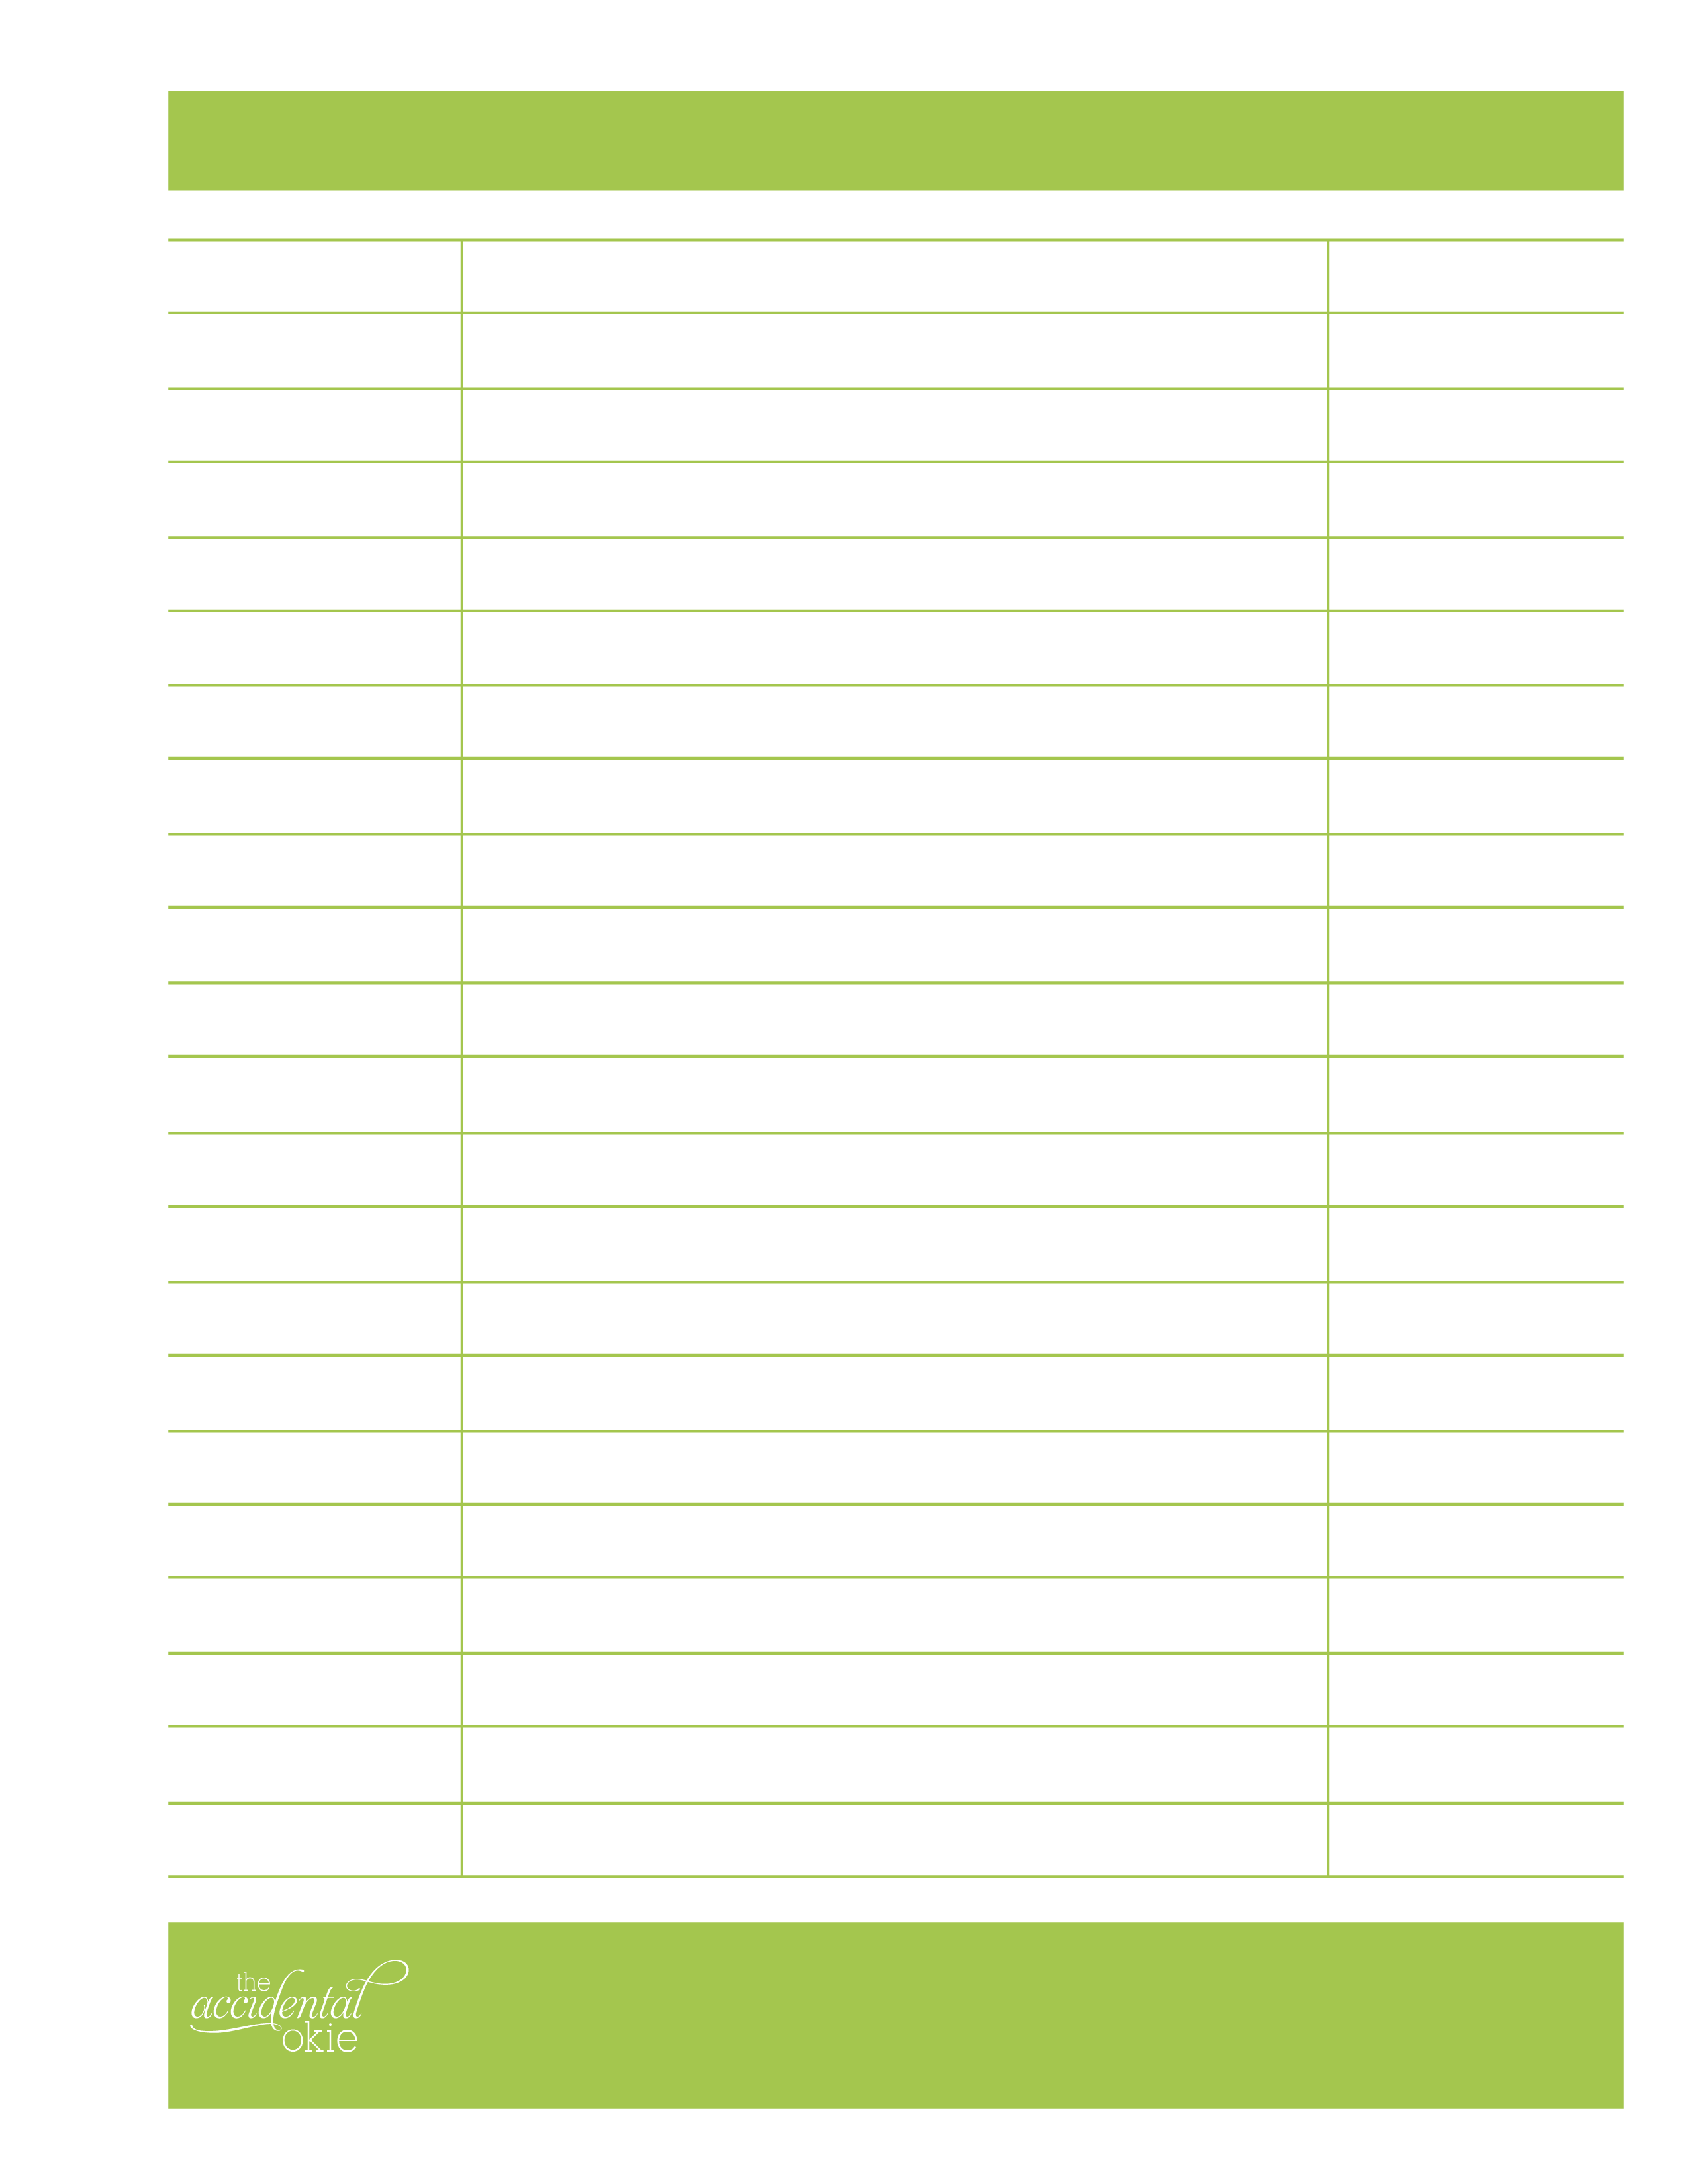 7 Best Images of Free Printable Blank Budget Worksheet - Free Printable ...